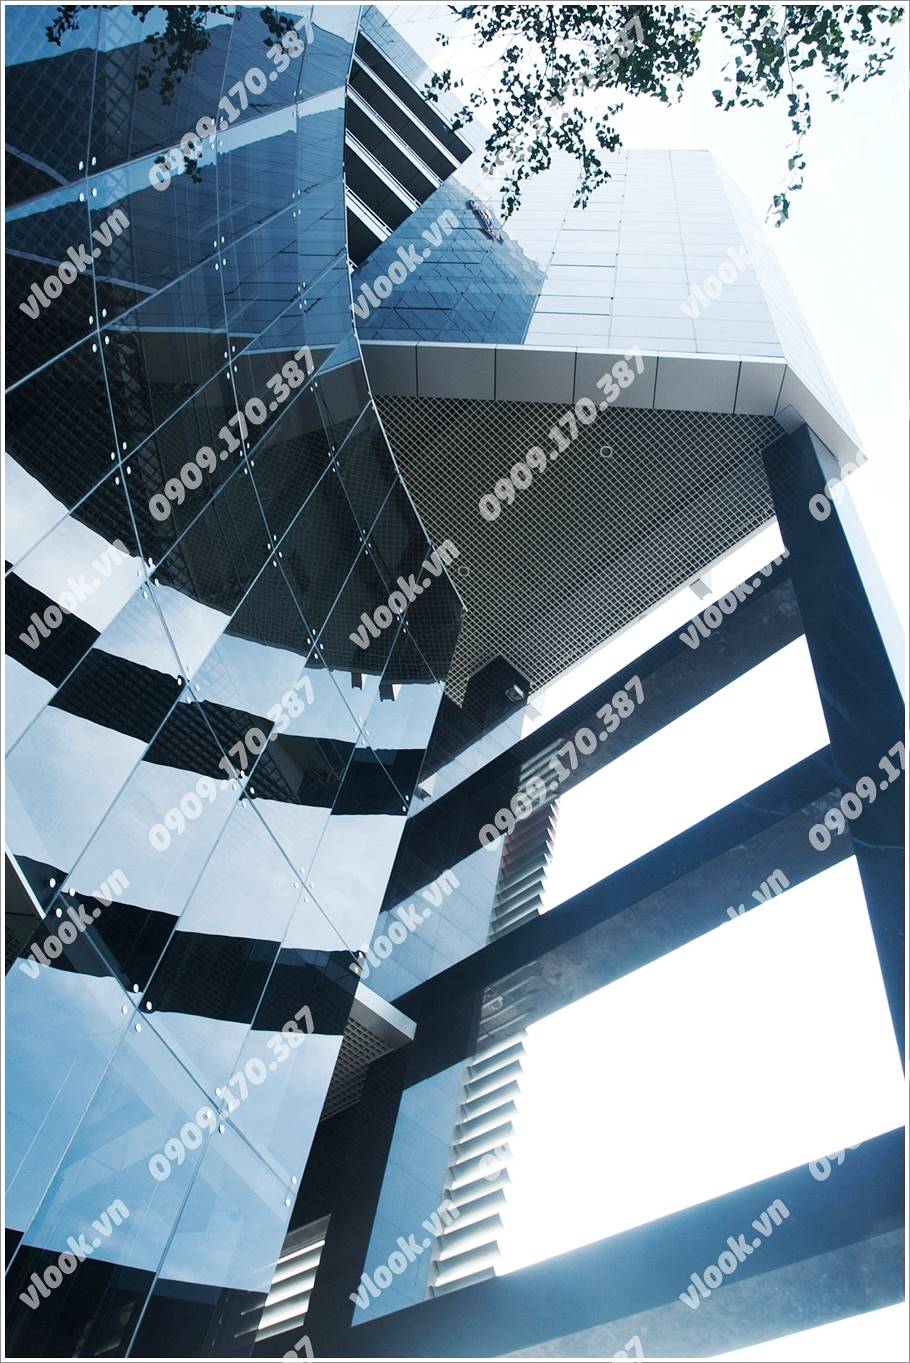 Cao ốc cho thuê văn phòng HMC Tower Đinh Tiên Hoàng Quận 1 TPHCM - vlook.vn